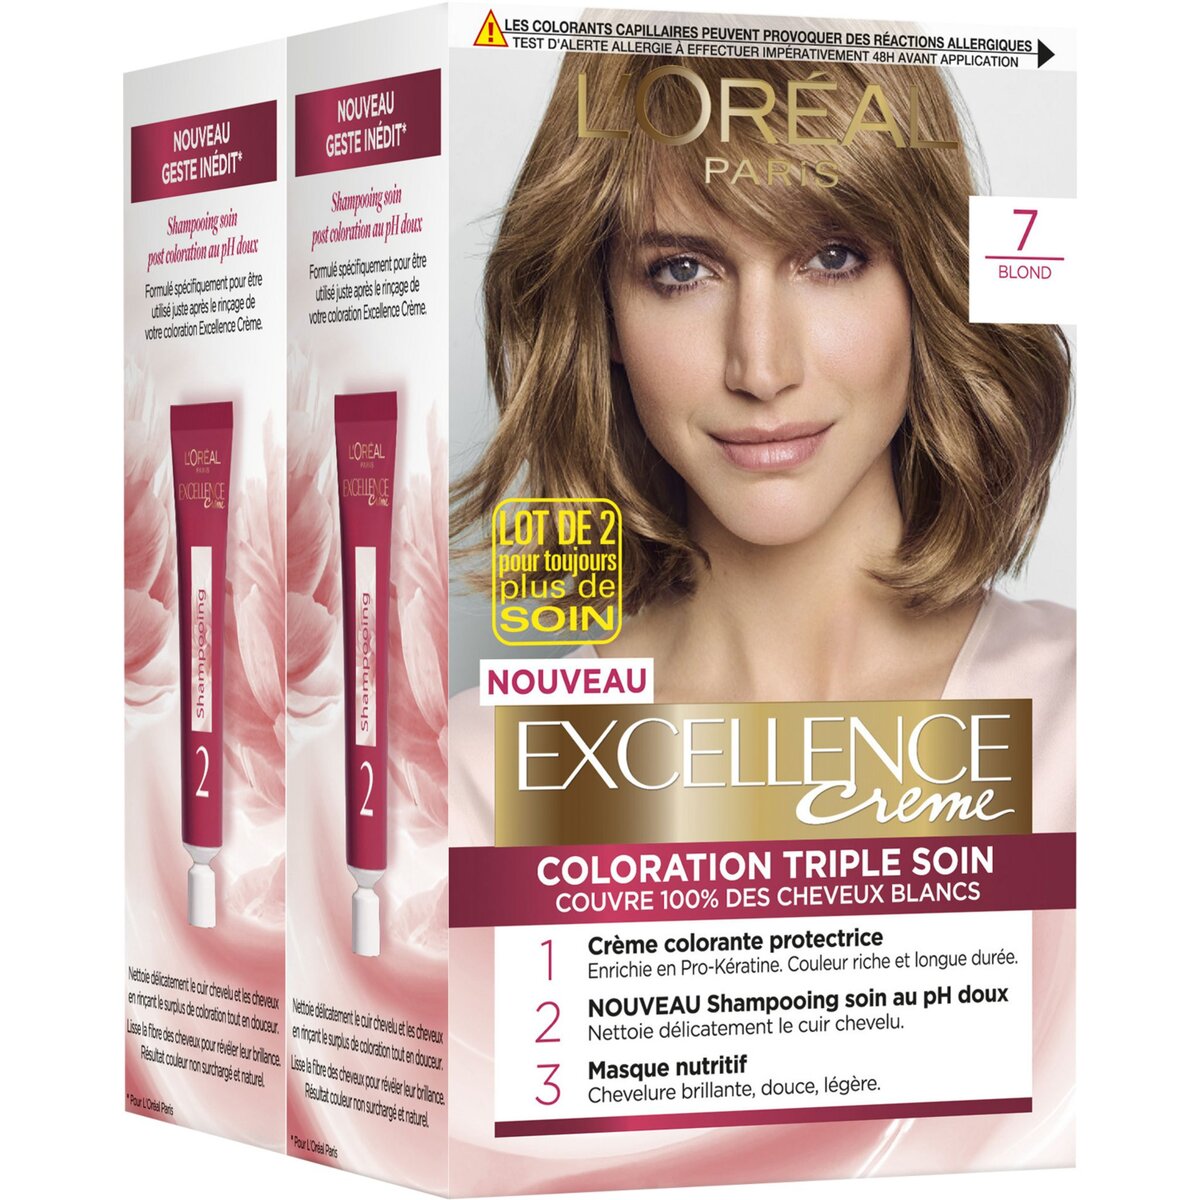 L'OREAL Excellence crème colorante longue durée triple soin 7 blond 2x4 produits 2 kits